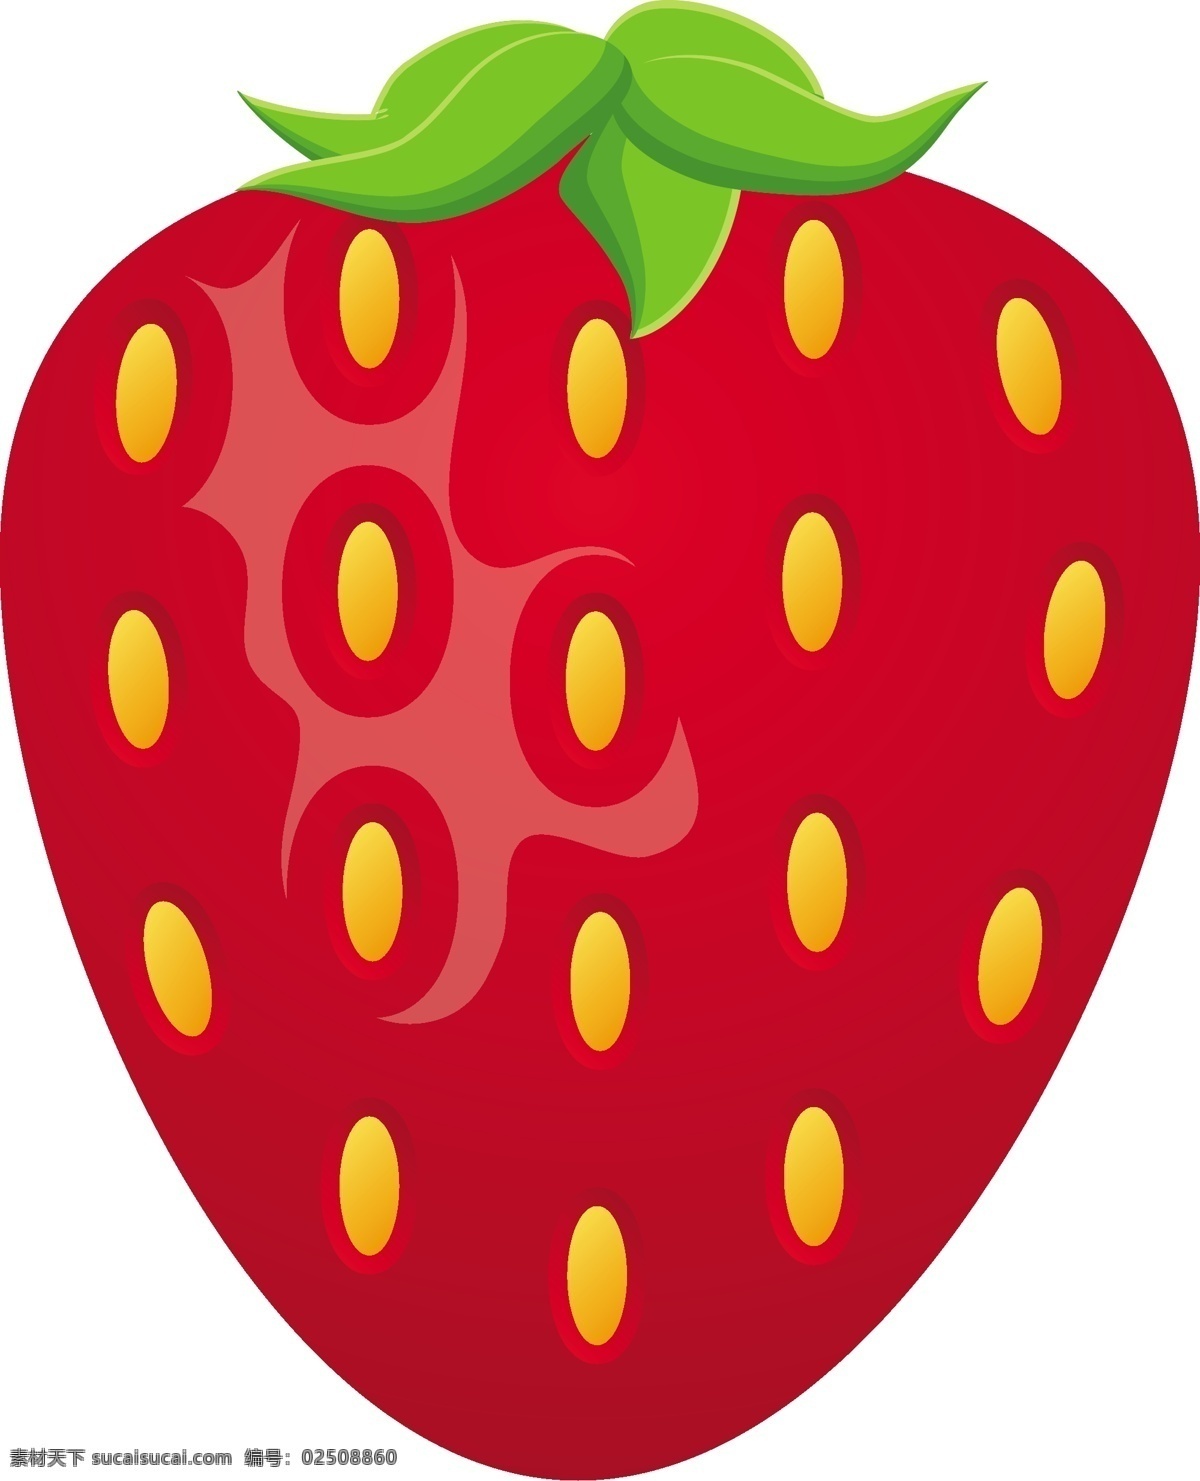 一颗草莓 草莓 草莓鲜红 水果 甜蜜 草莓卡通 草莓动画 草莓动漫 草莓饱满 草莓丰满 草莓成熟 草莓季节